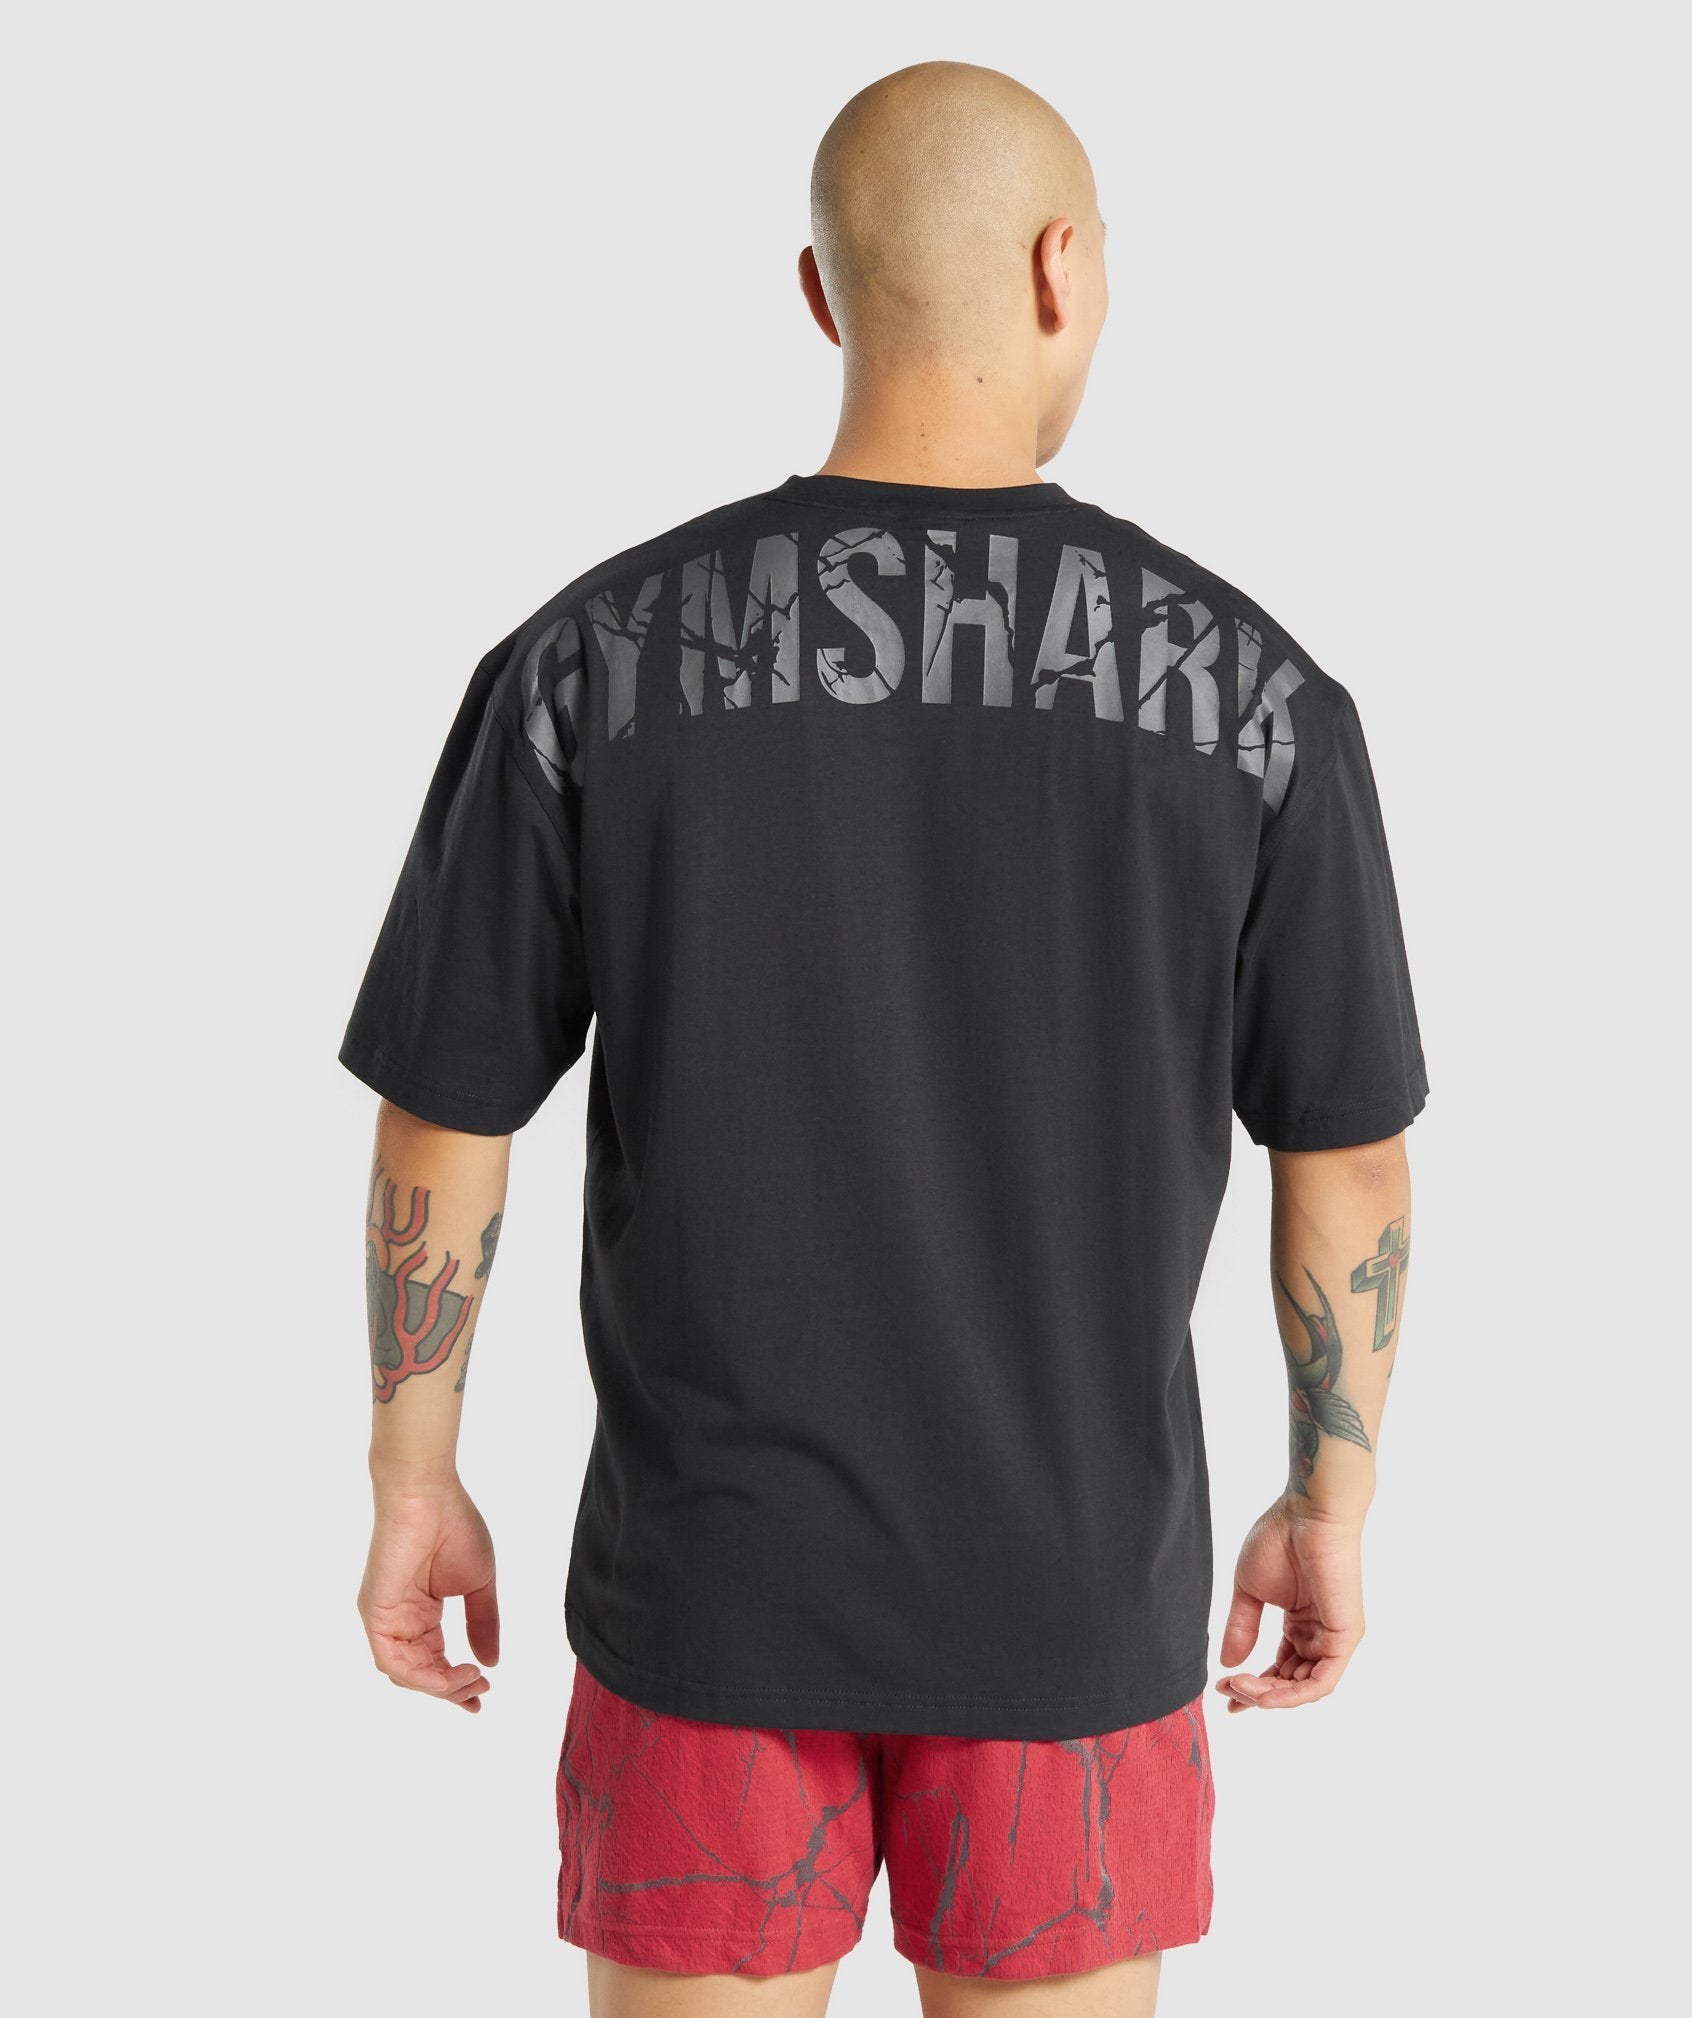 Gymshark Power T-Shirt Review